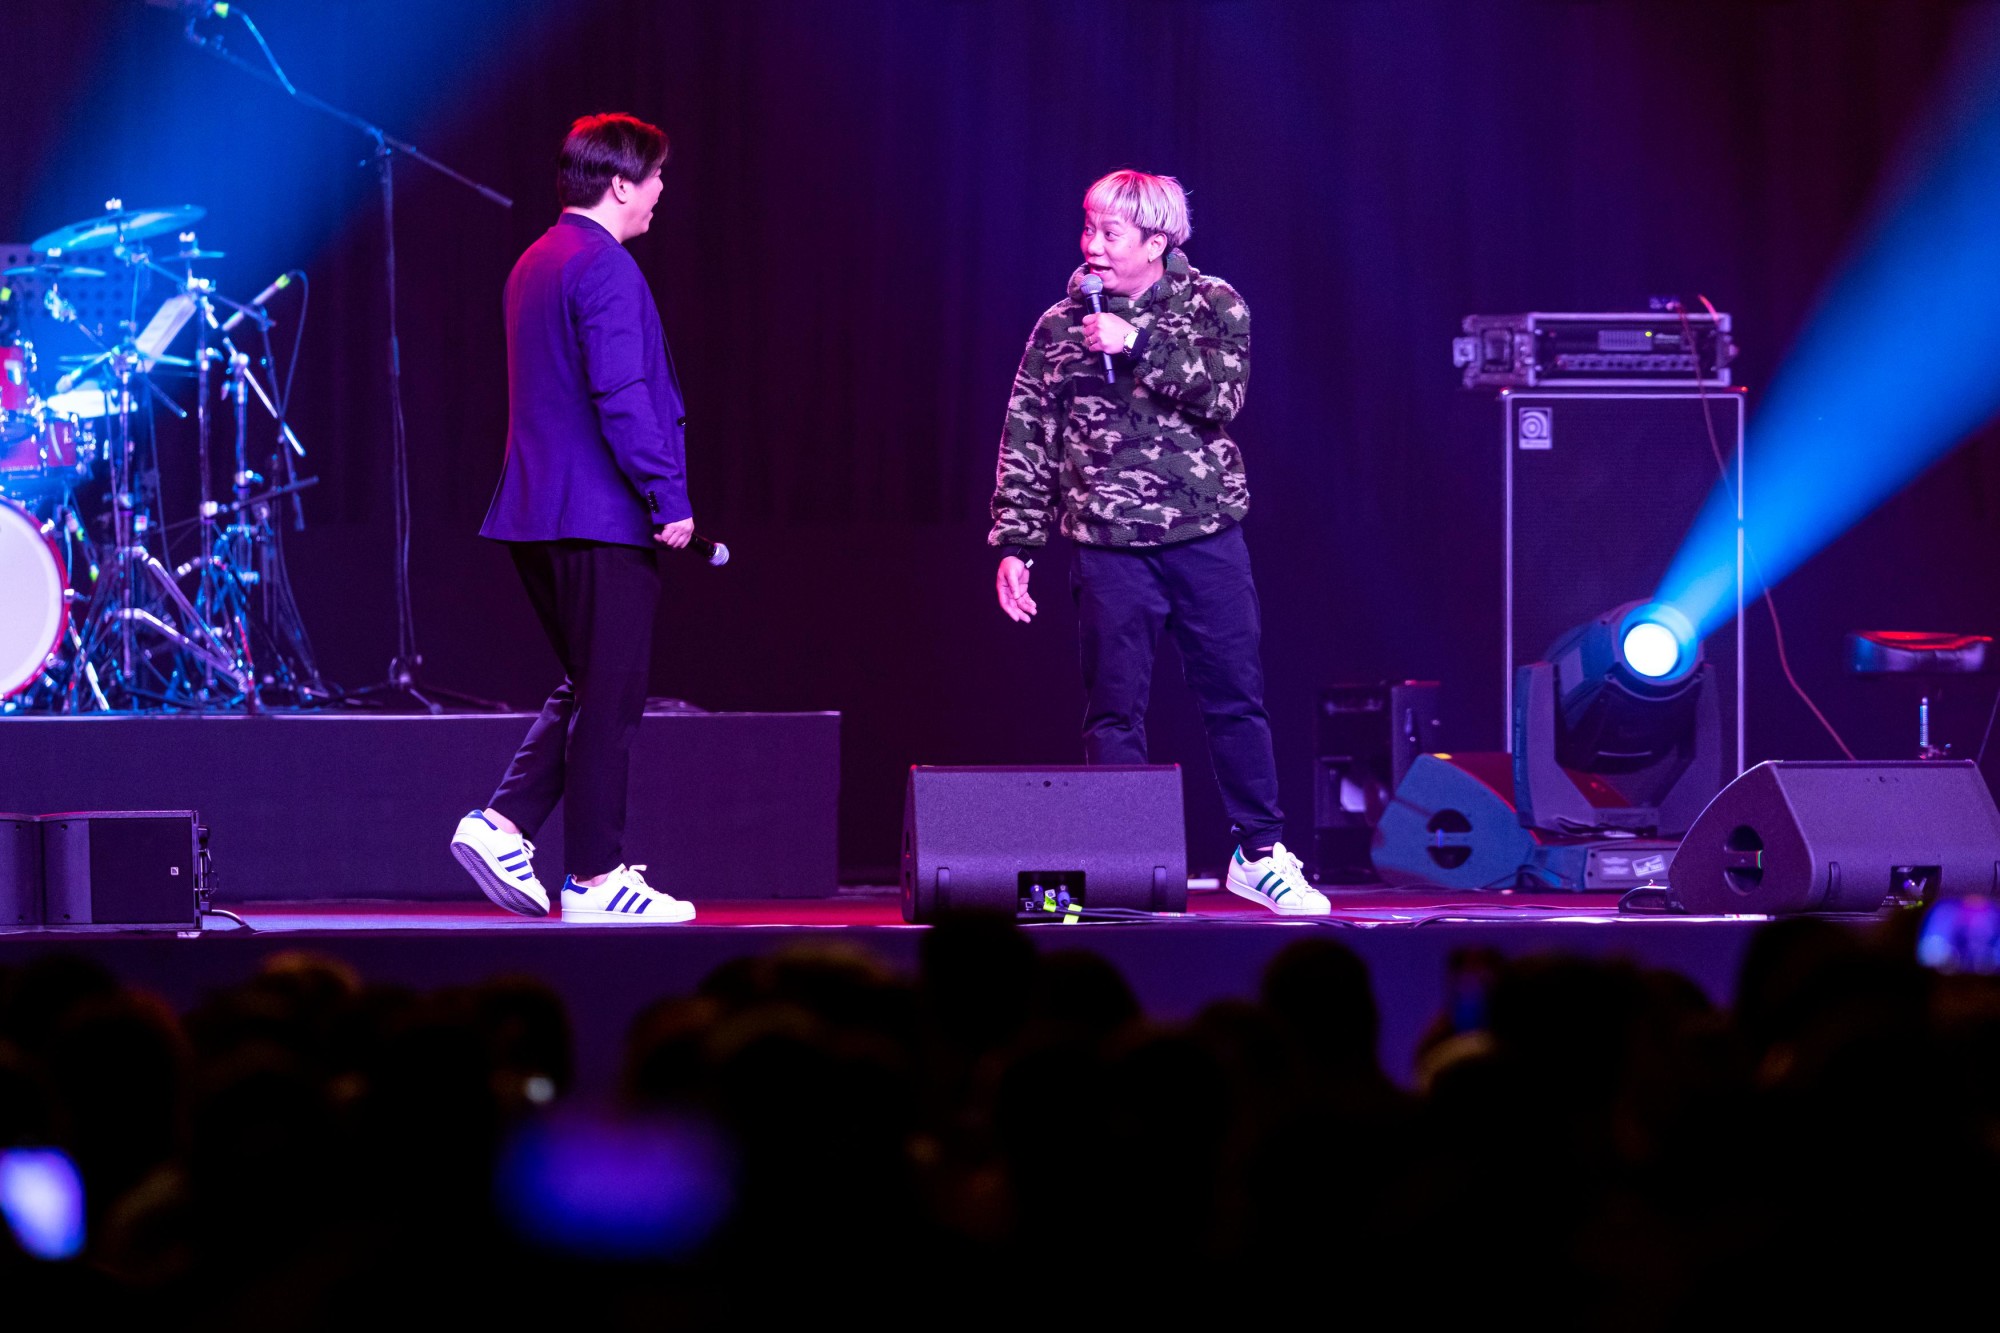 MC Muah and Lassy performs at DEC Arena m52390